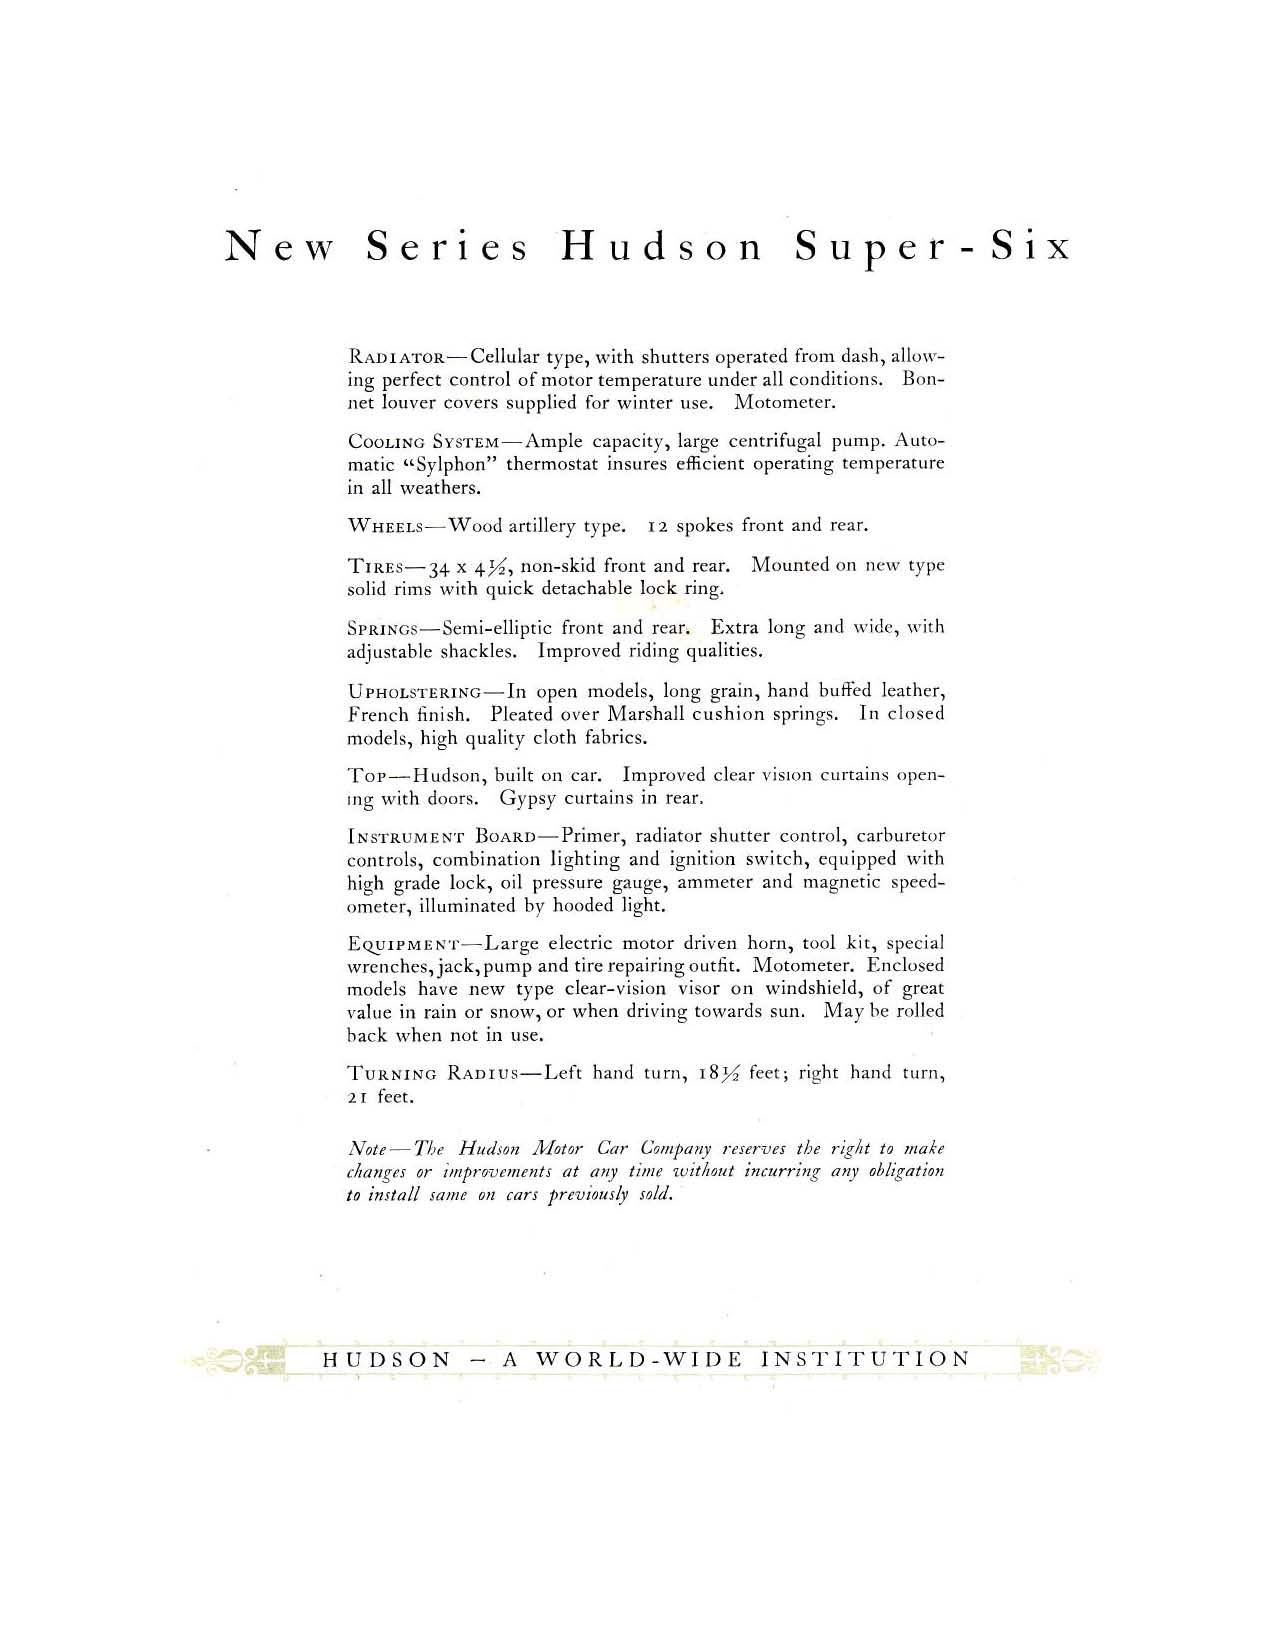 1919 Hudson Super-Six-13